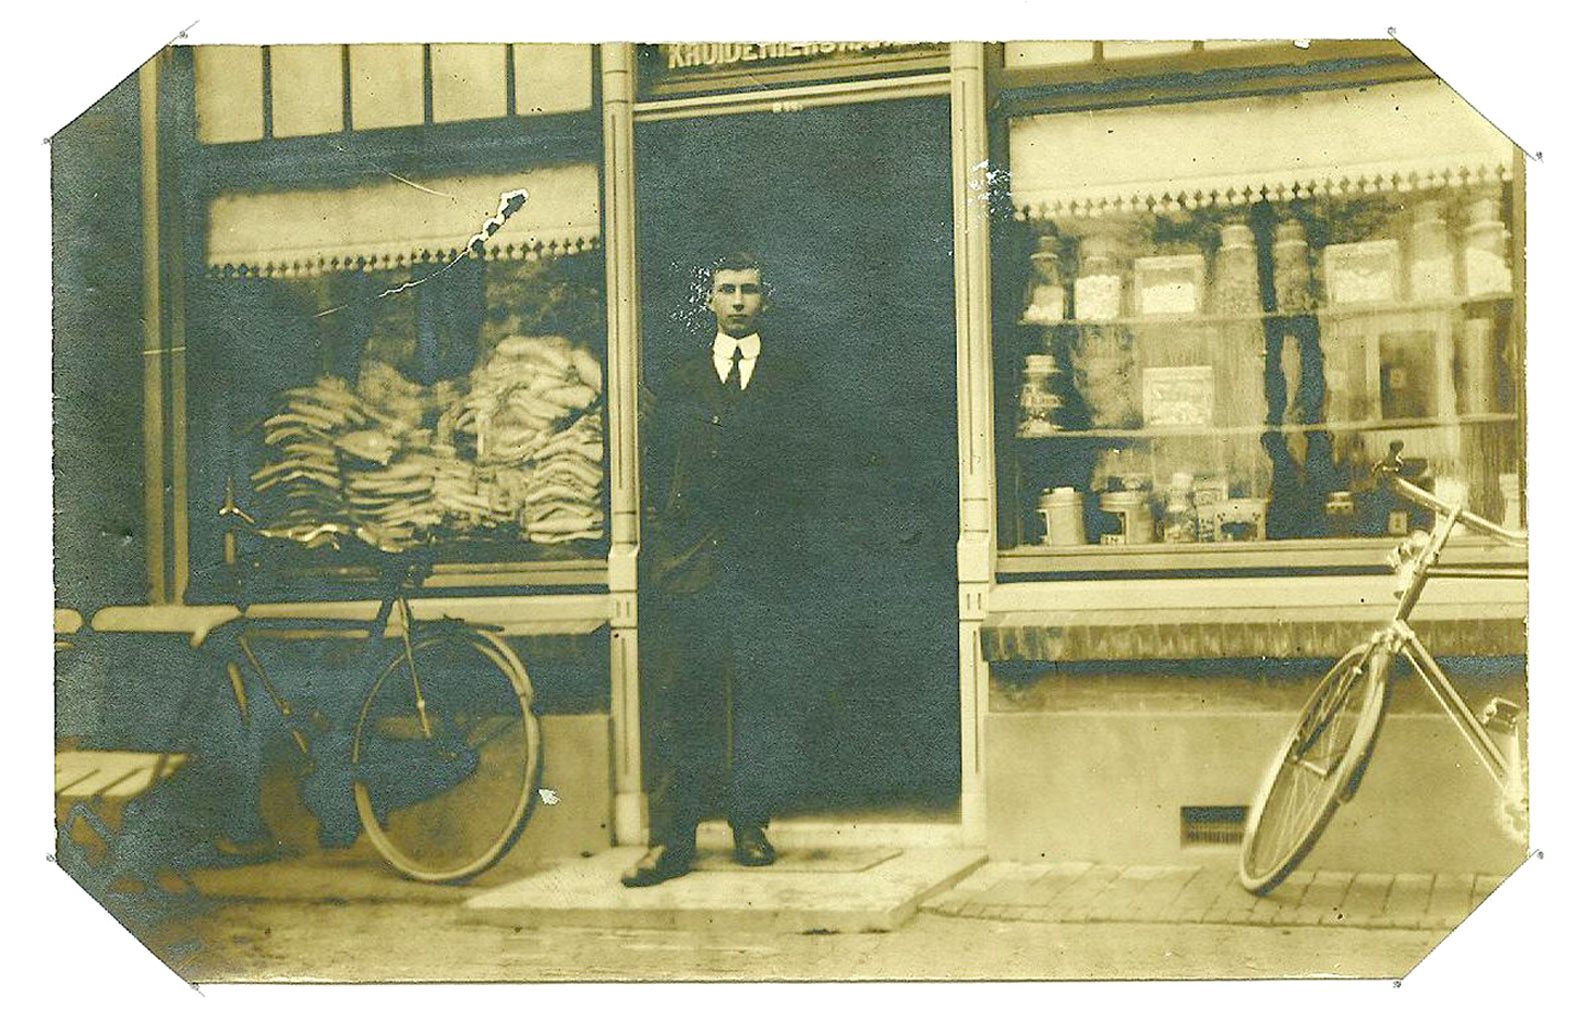 Wijhe, Boerhaar. Theo Boerkamp voor zijn kruideniers- en textielwinkel. Foto 19134. Later de Eldoradobar.